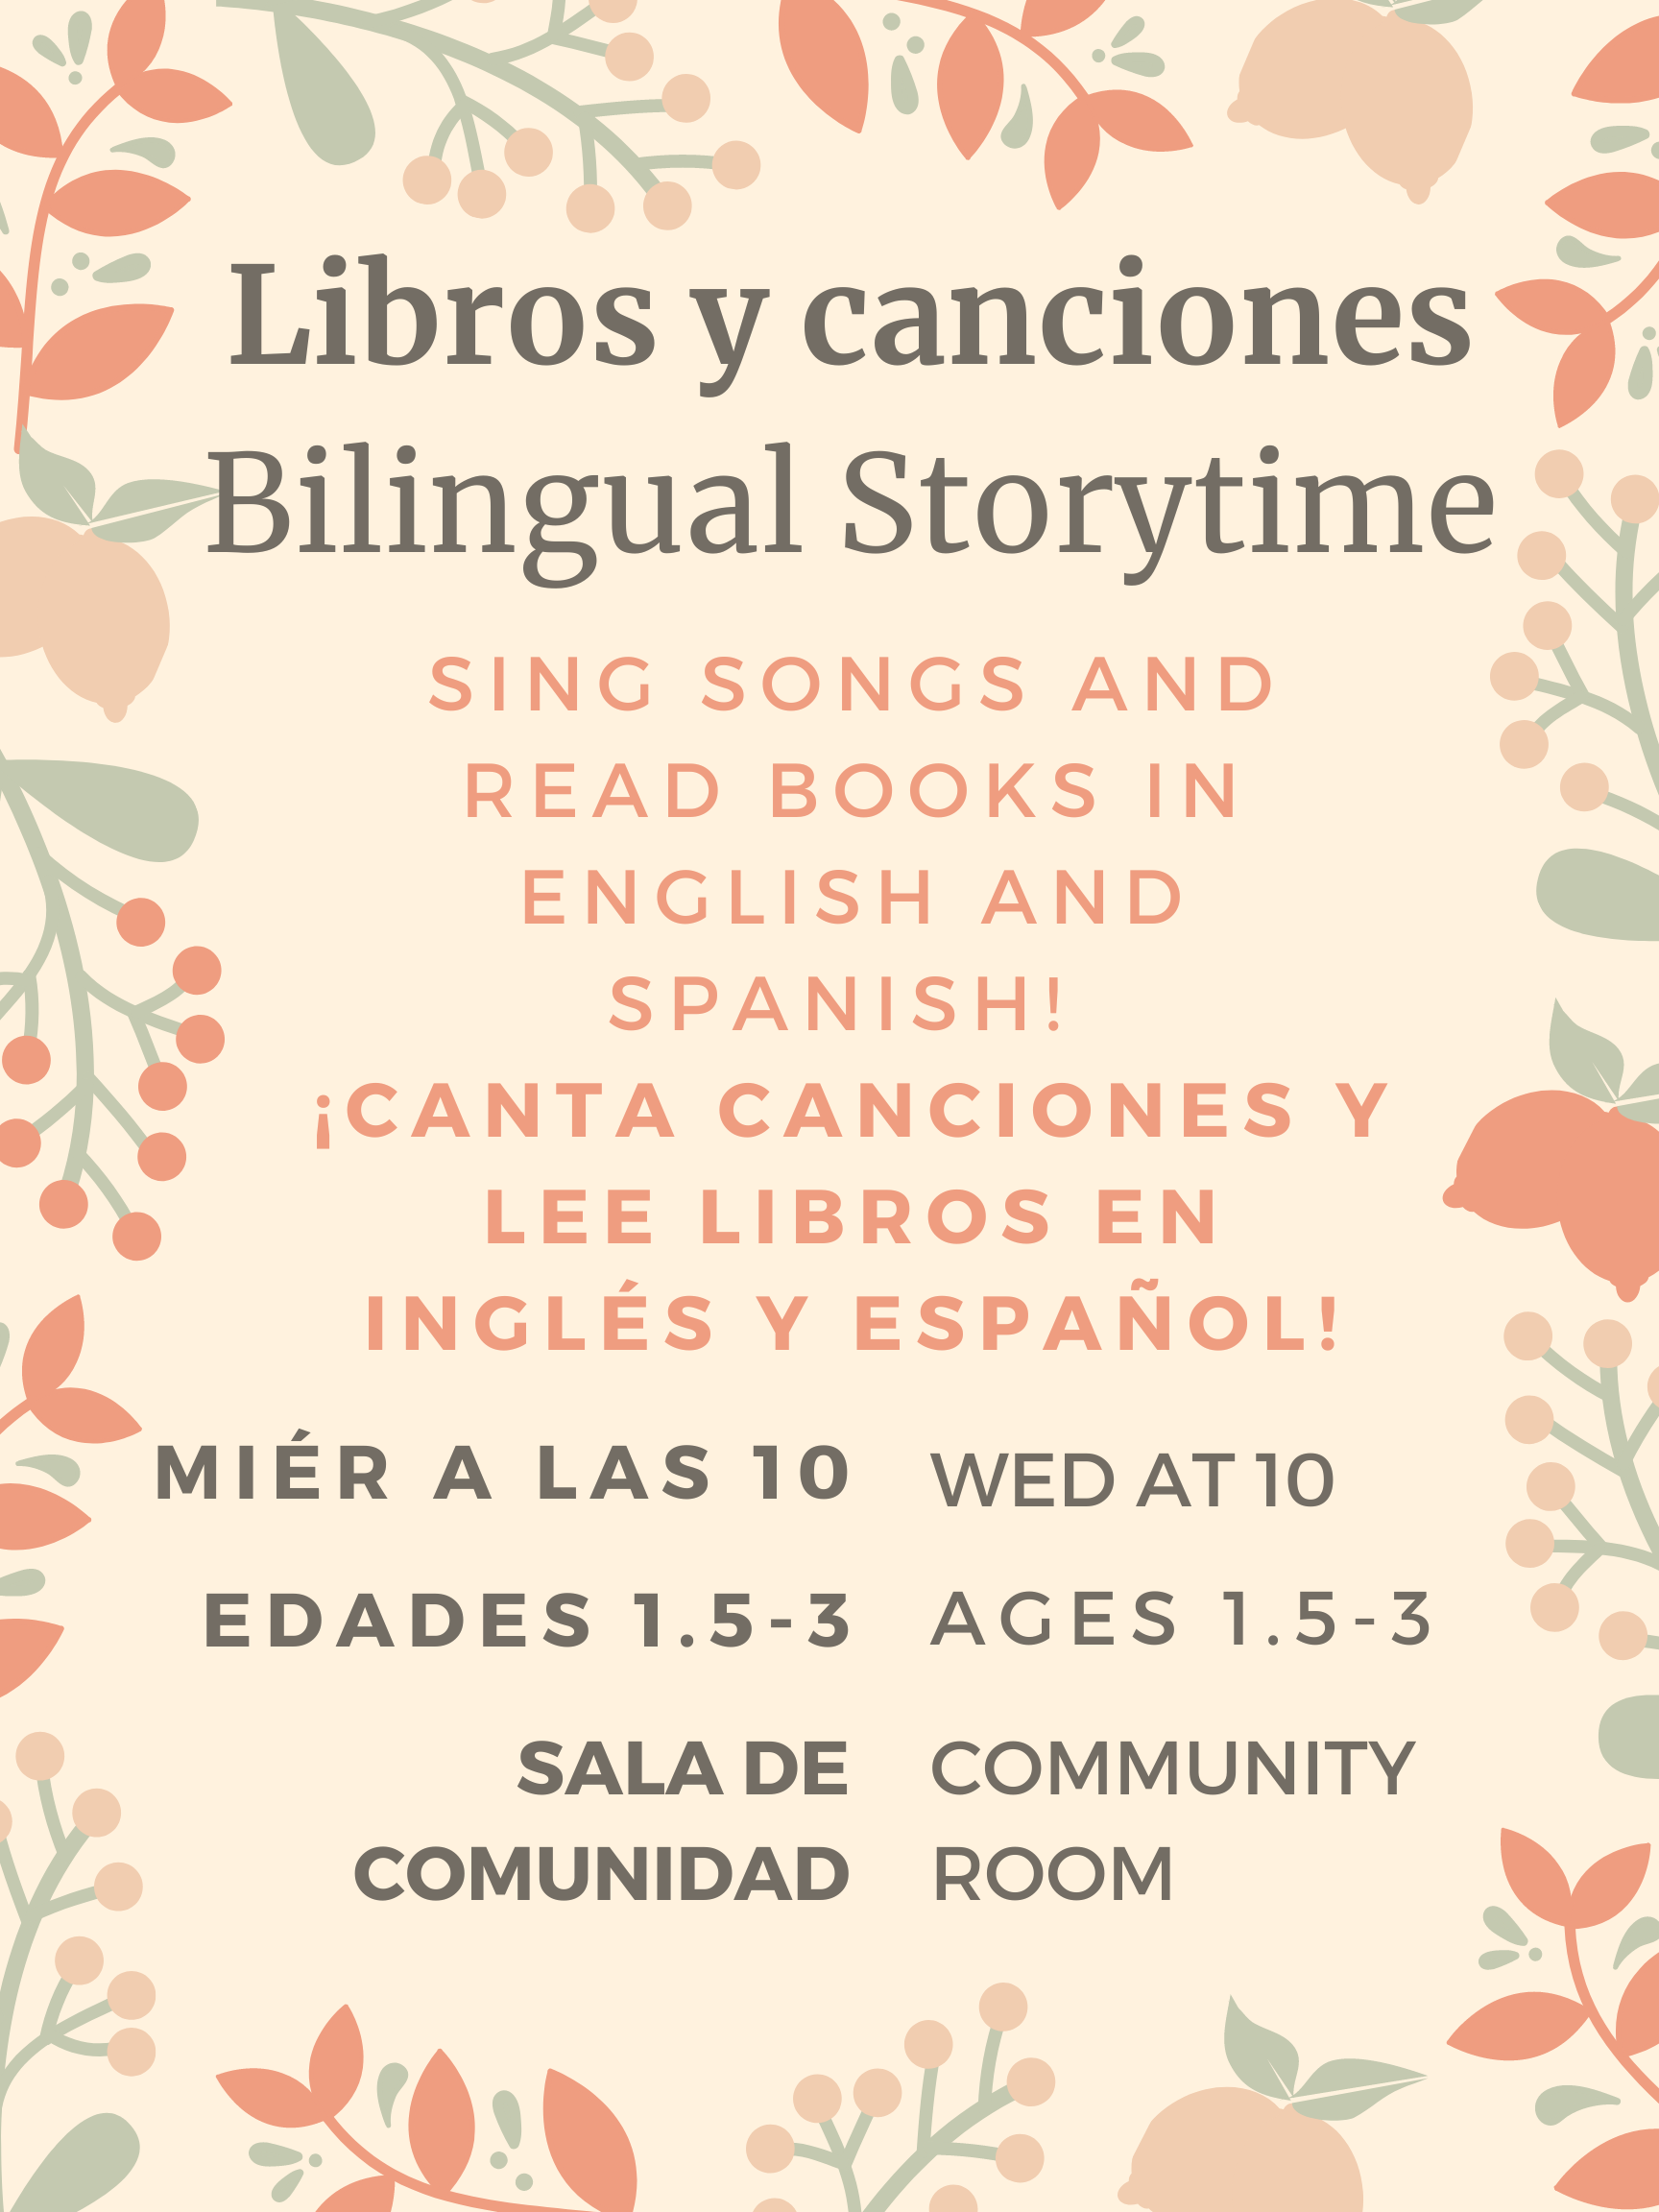 Bilingual storytime/Libros y canciones, Wednesday, April 12th